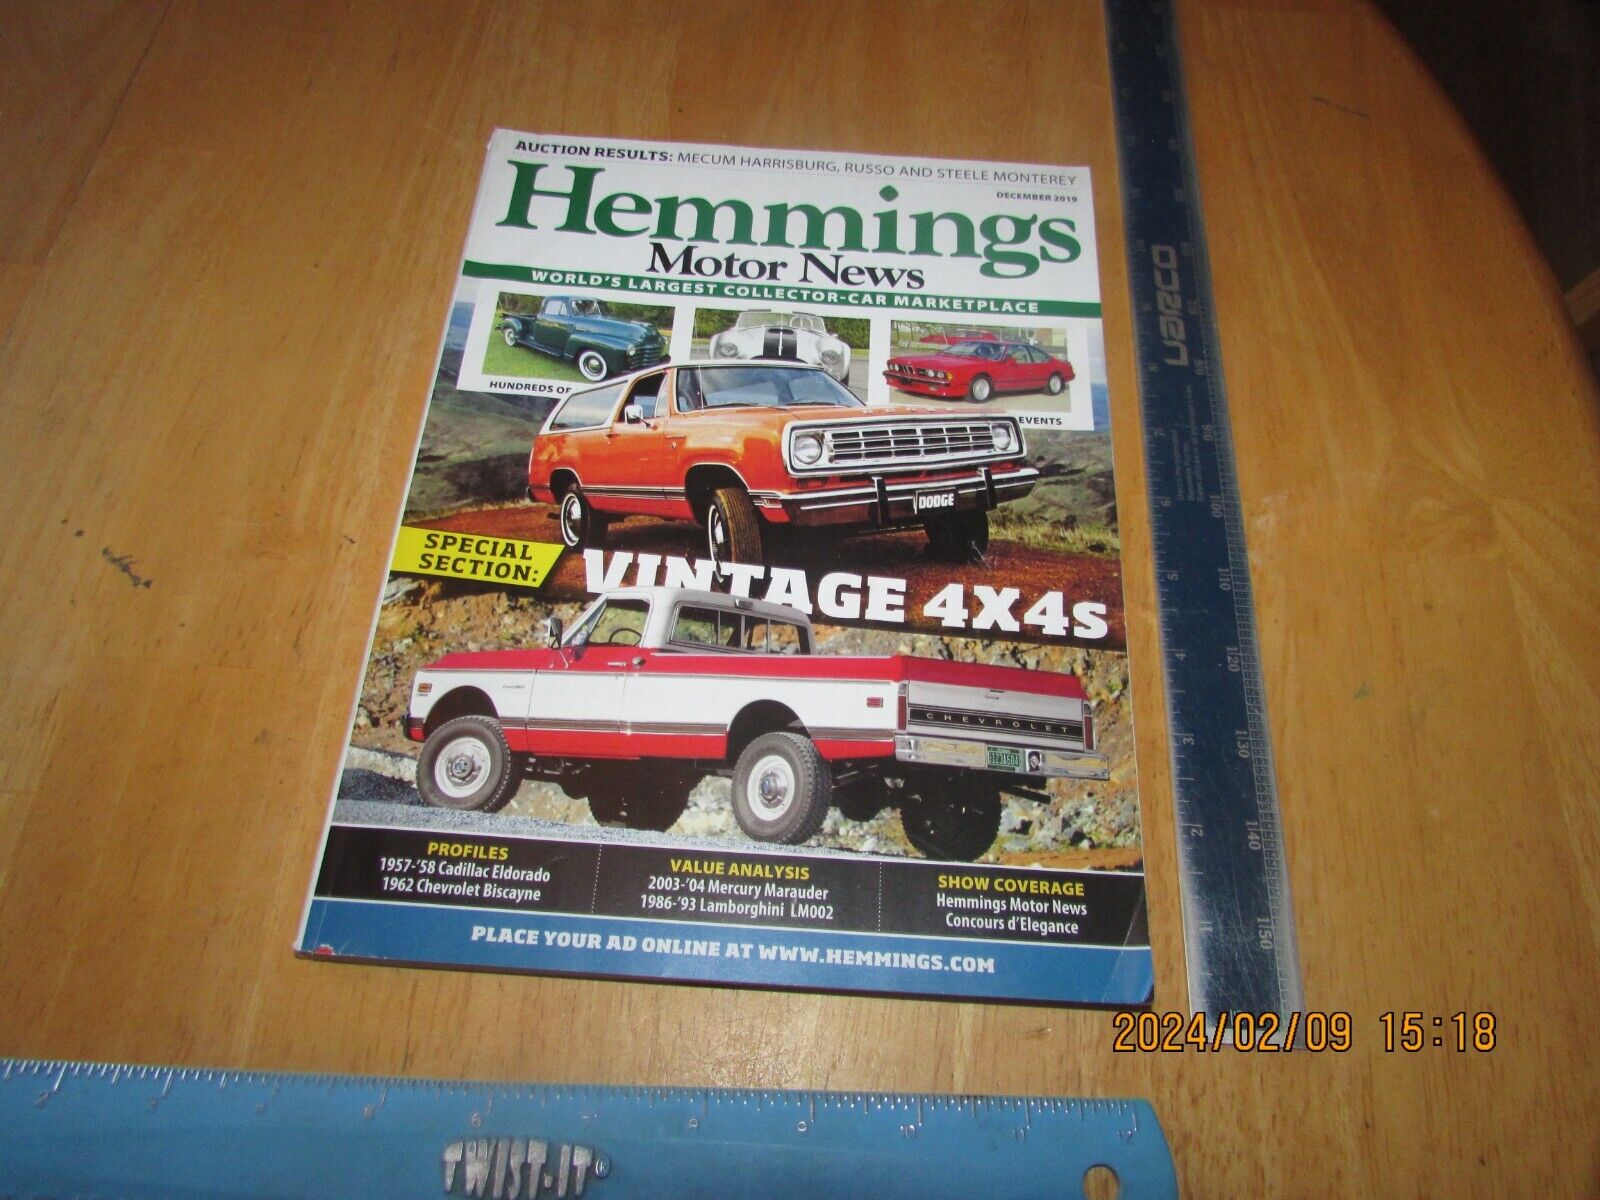 Hemmings Motor News December 2019 - Vintage 4X4s